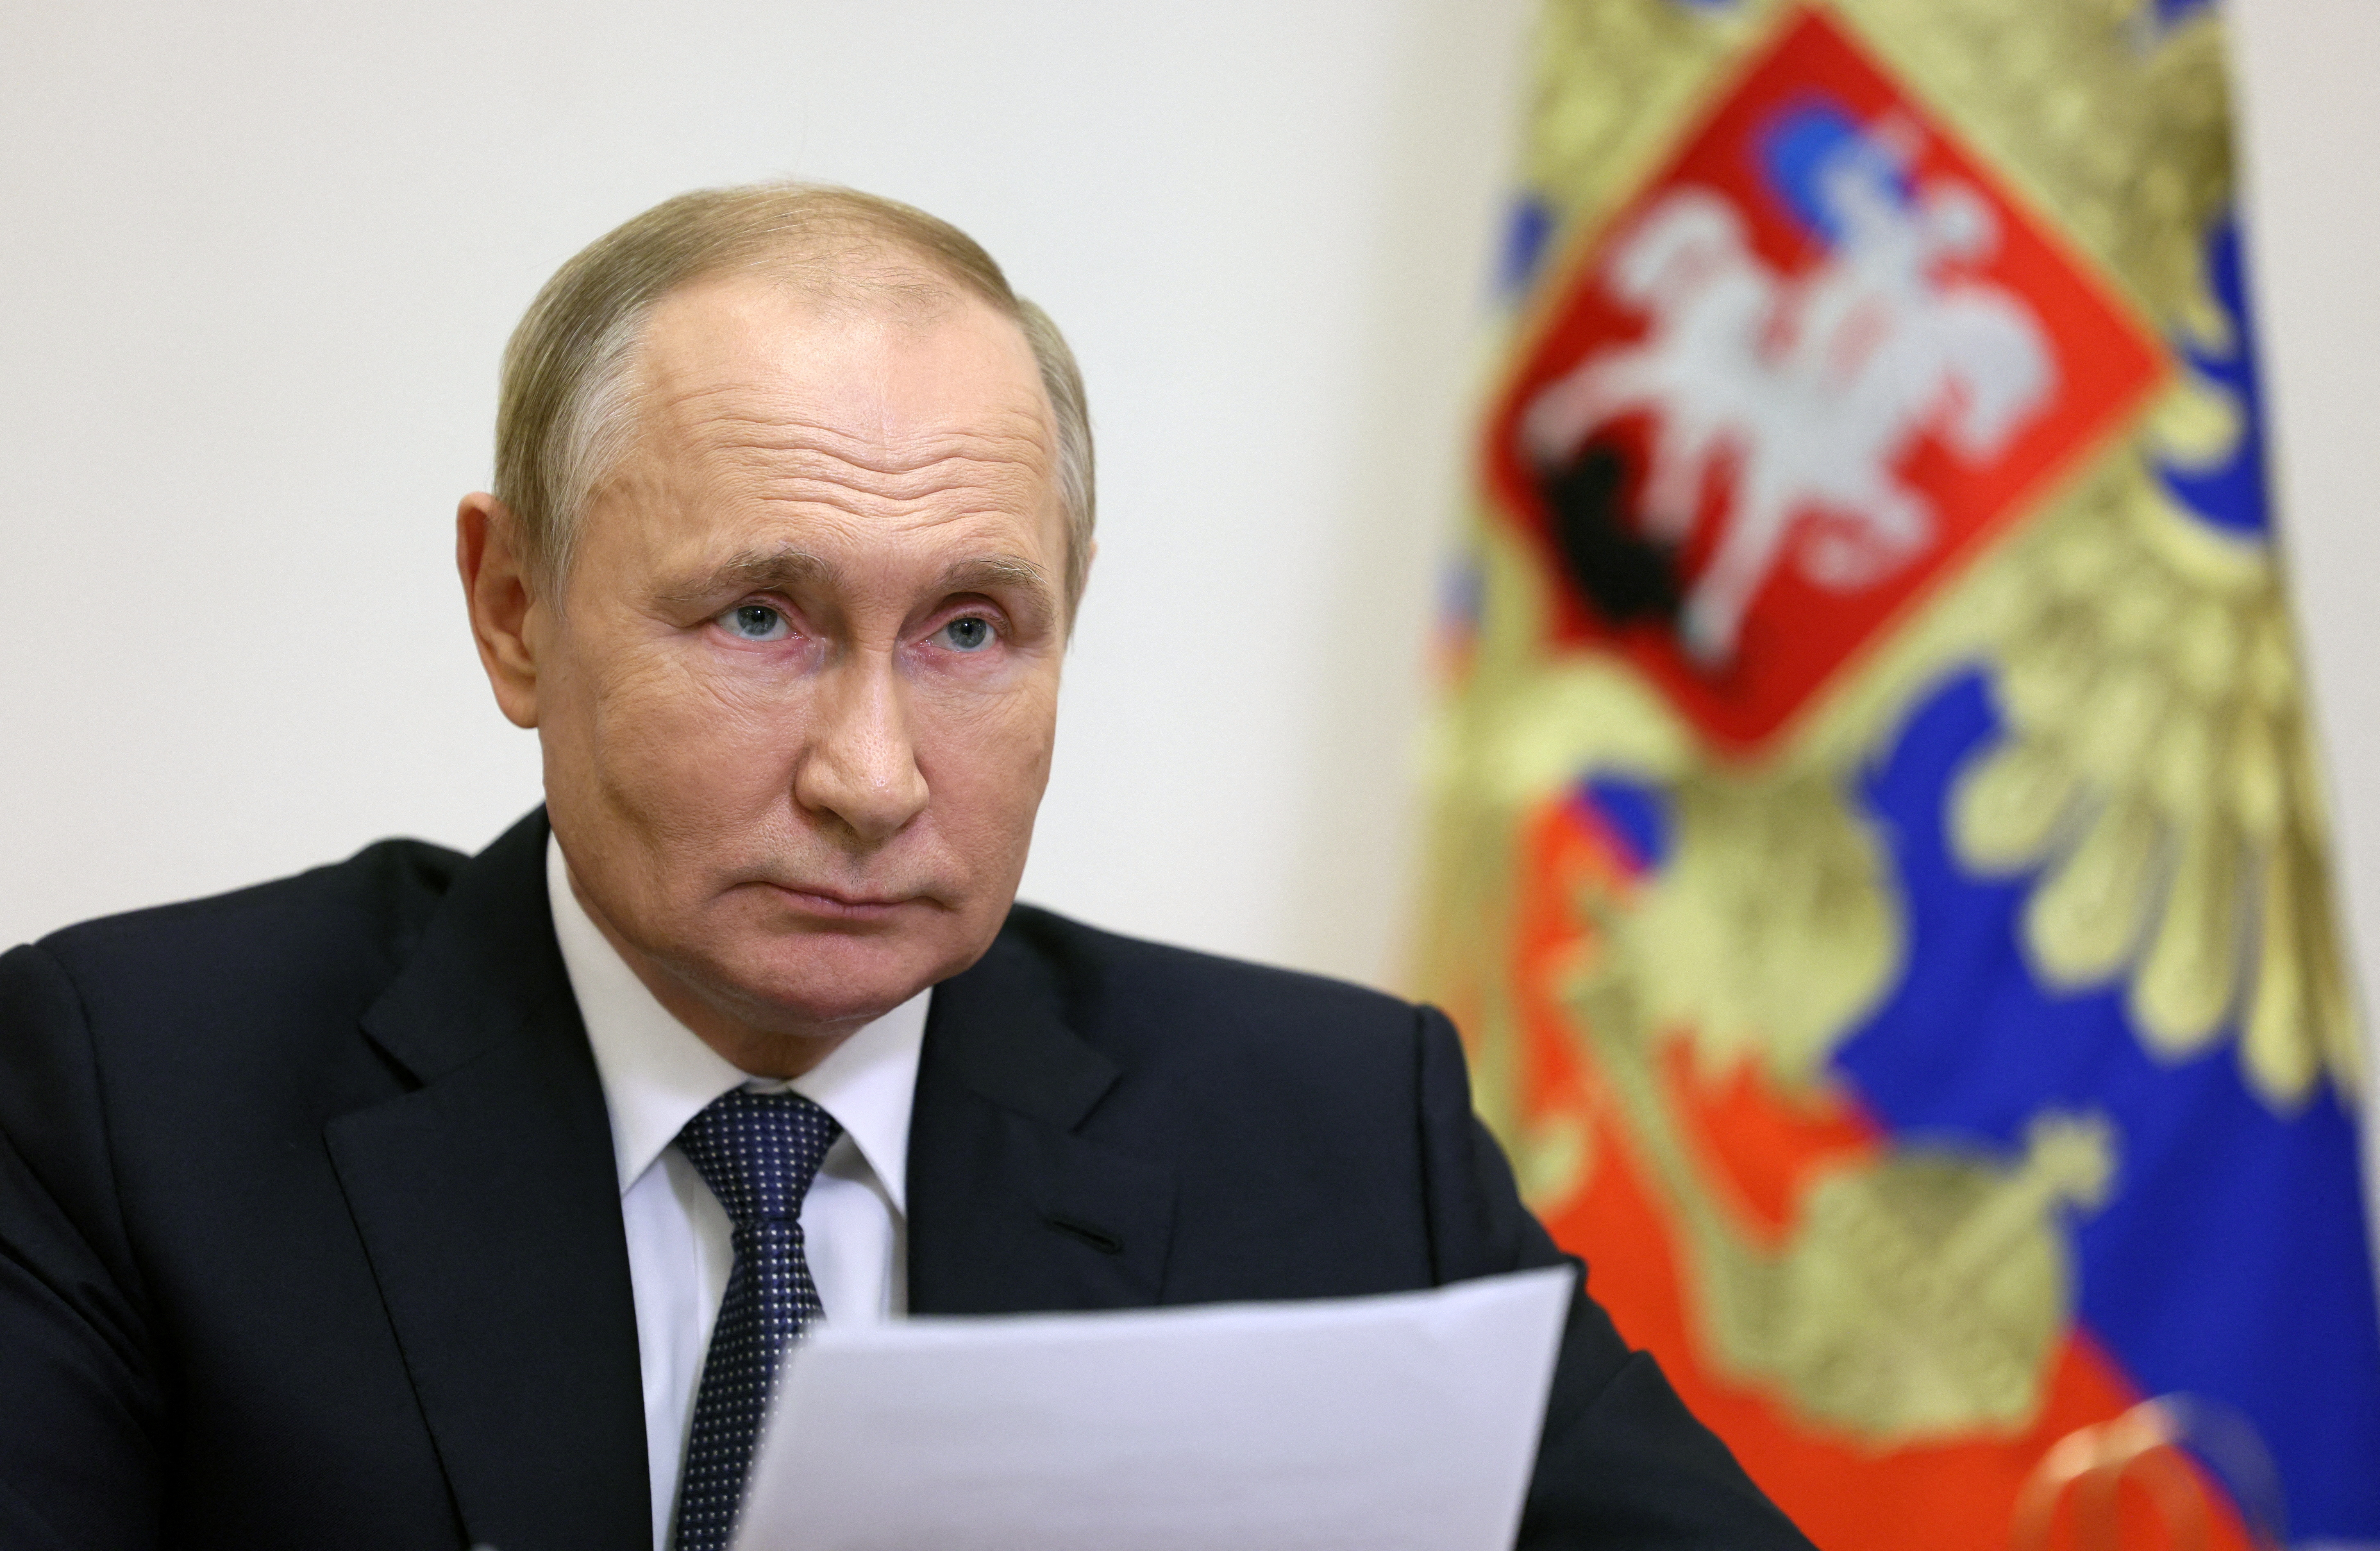 La estrategia propagandística de Vladimir Putin para encubrir las atrocidades cometidas en Ucrania